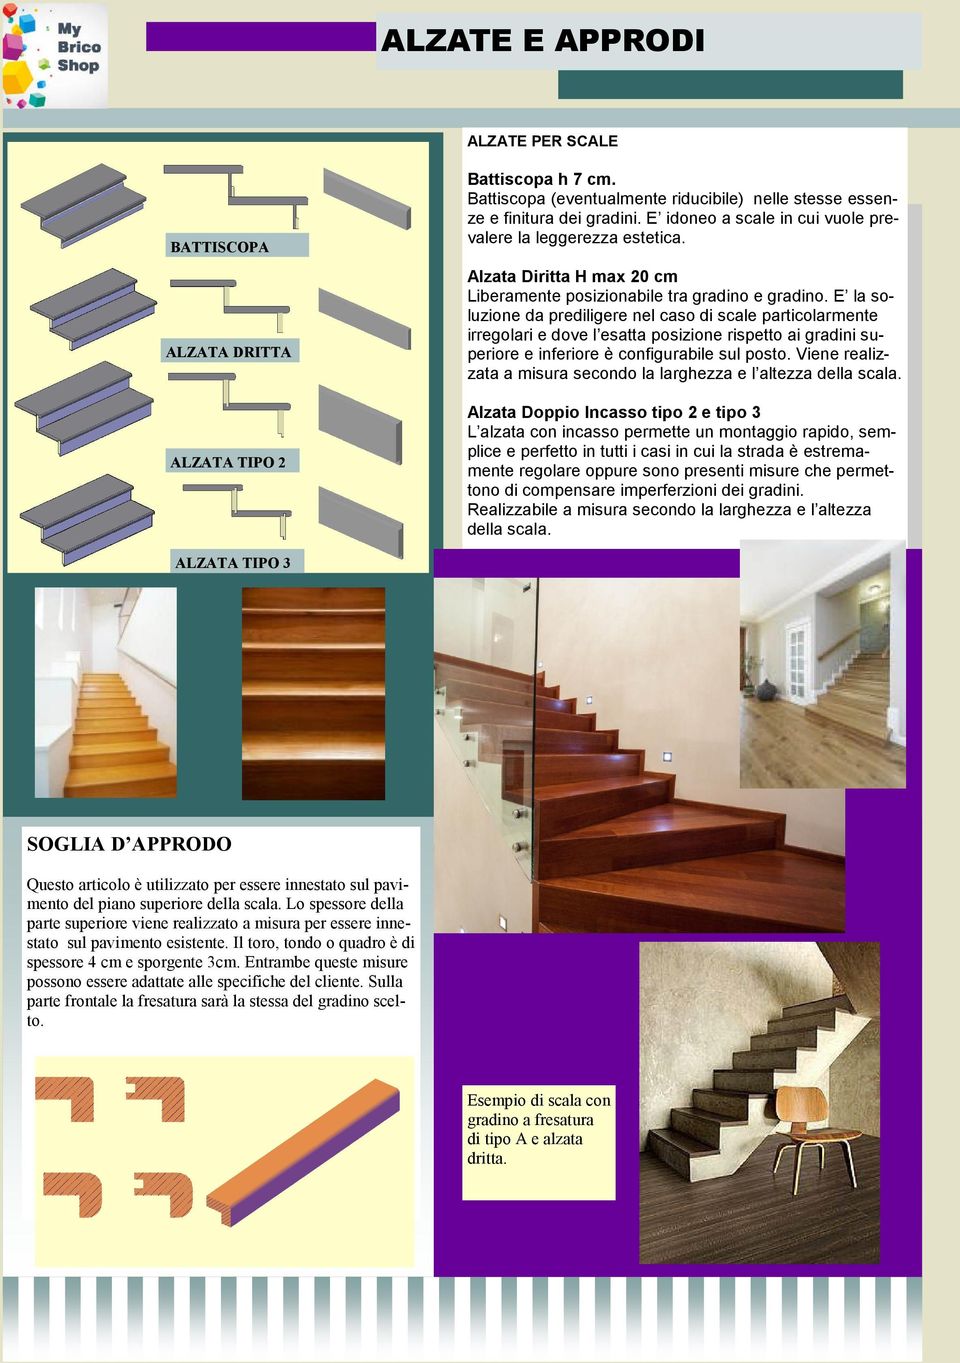 E la soluzione da prediligere nel caso di scale particolarmente irregolari e dove l esatta posizione rispetto ai gradini superiore e inferiore è configurabile sul posto.